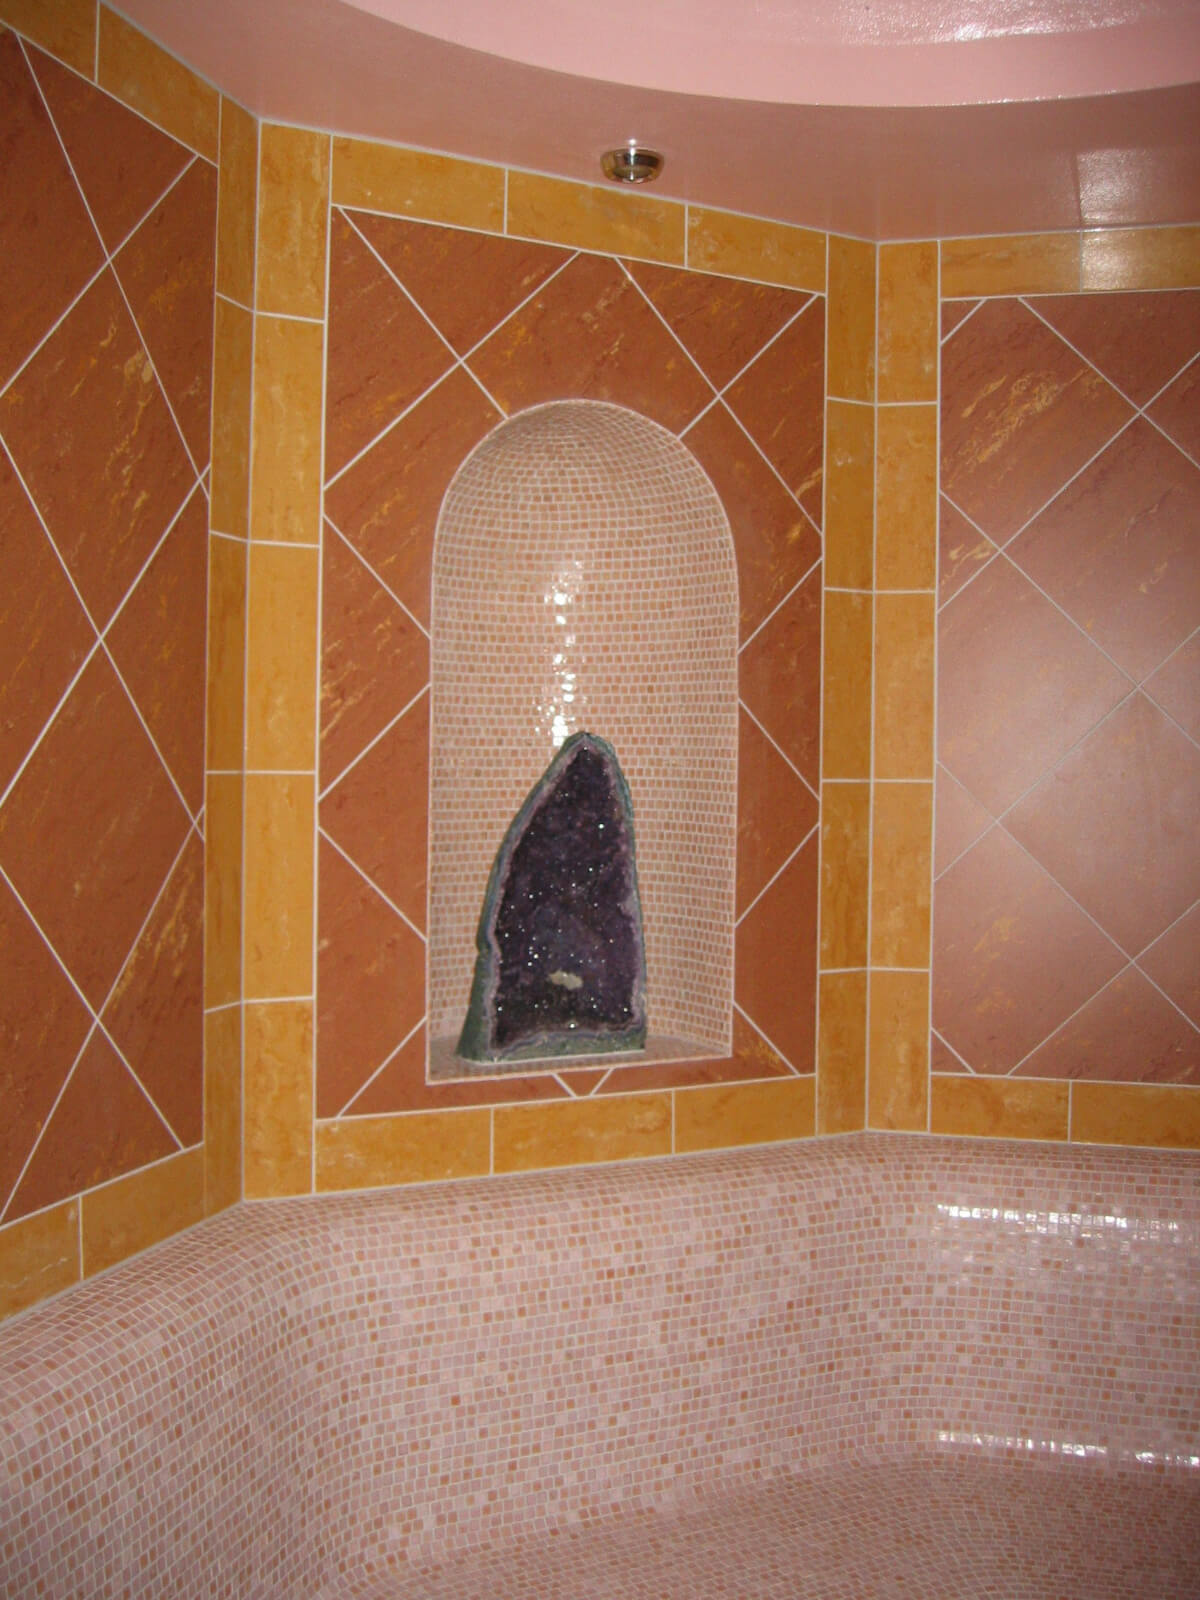 A bathroom with a tiled wall and a tiled floor.